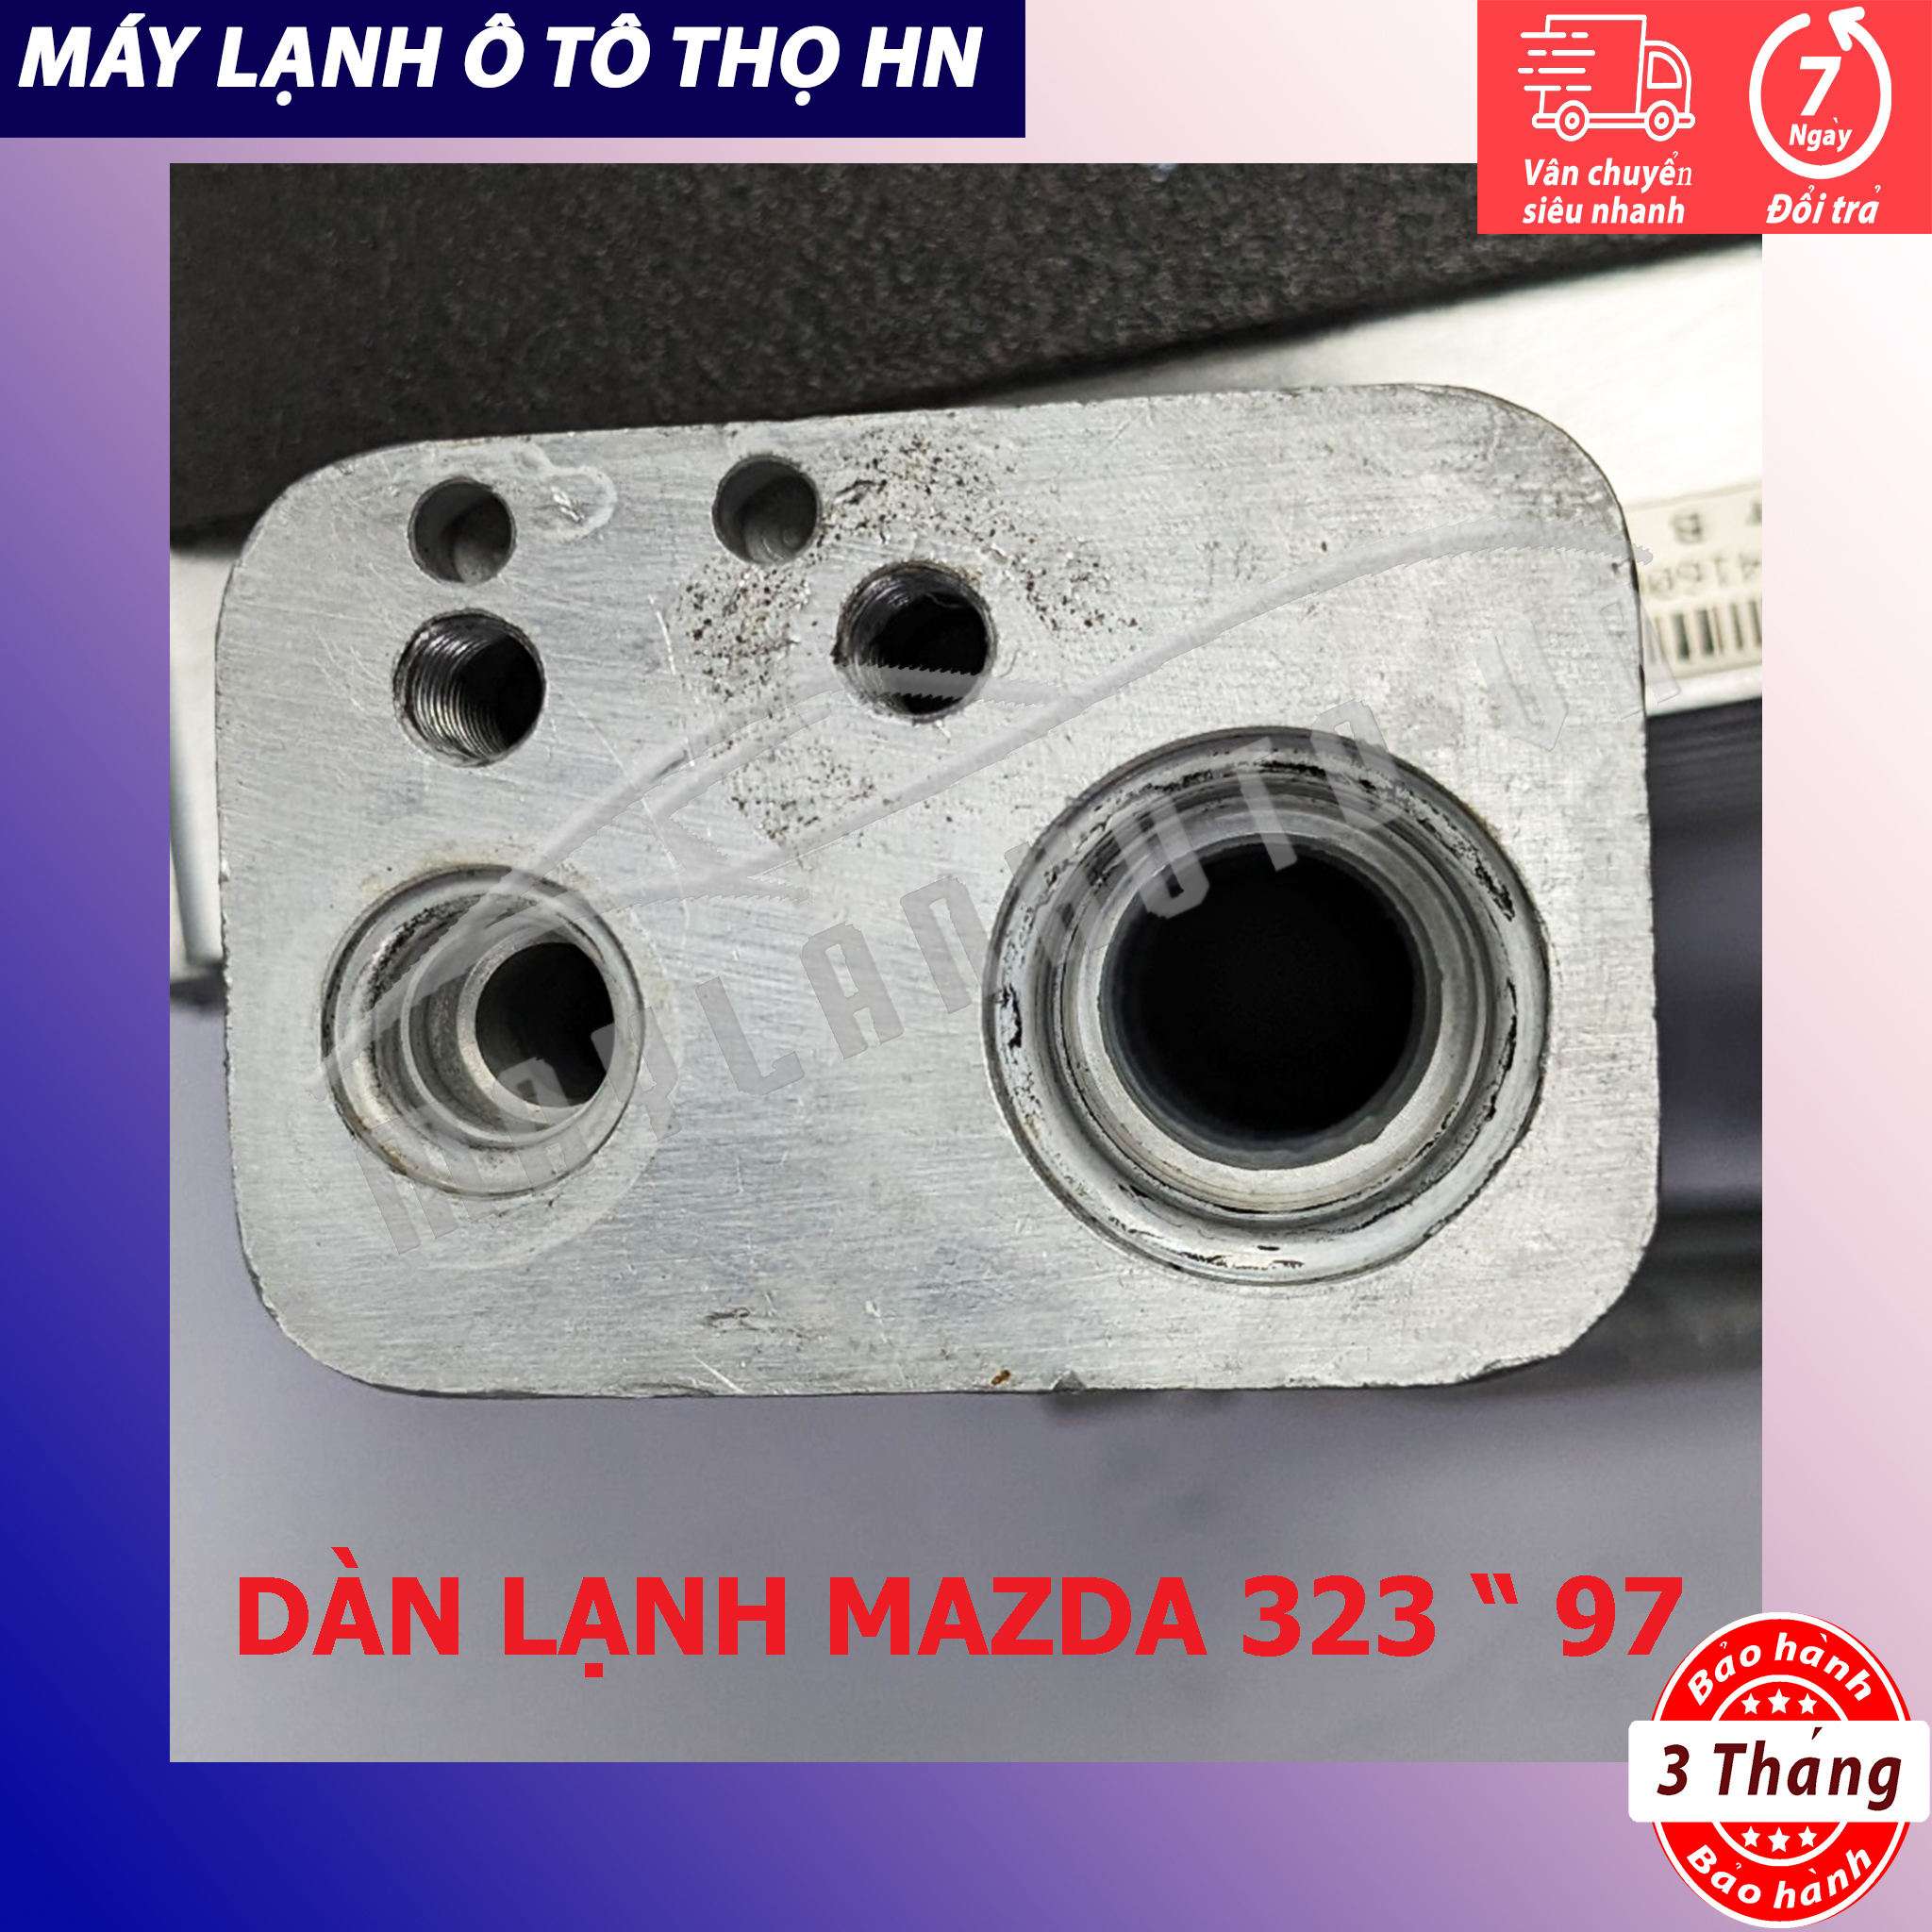 Dàn (giàn) lạnh Mazda 323 1997 Hàng xịn Thái Lan 97 (hàng chính hãng nhập khẩu trực tiếp)